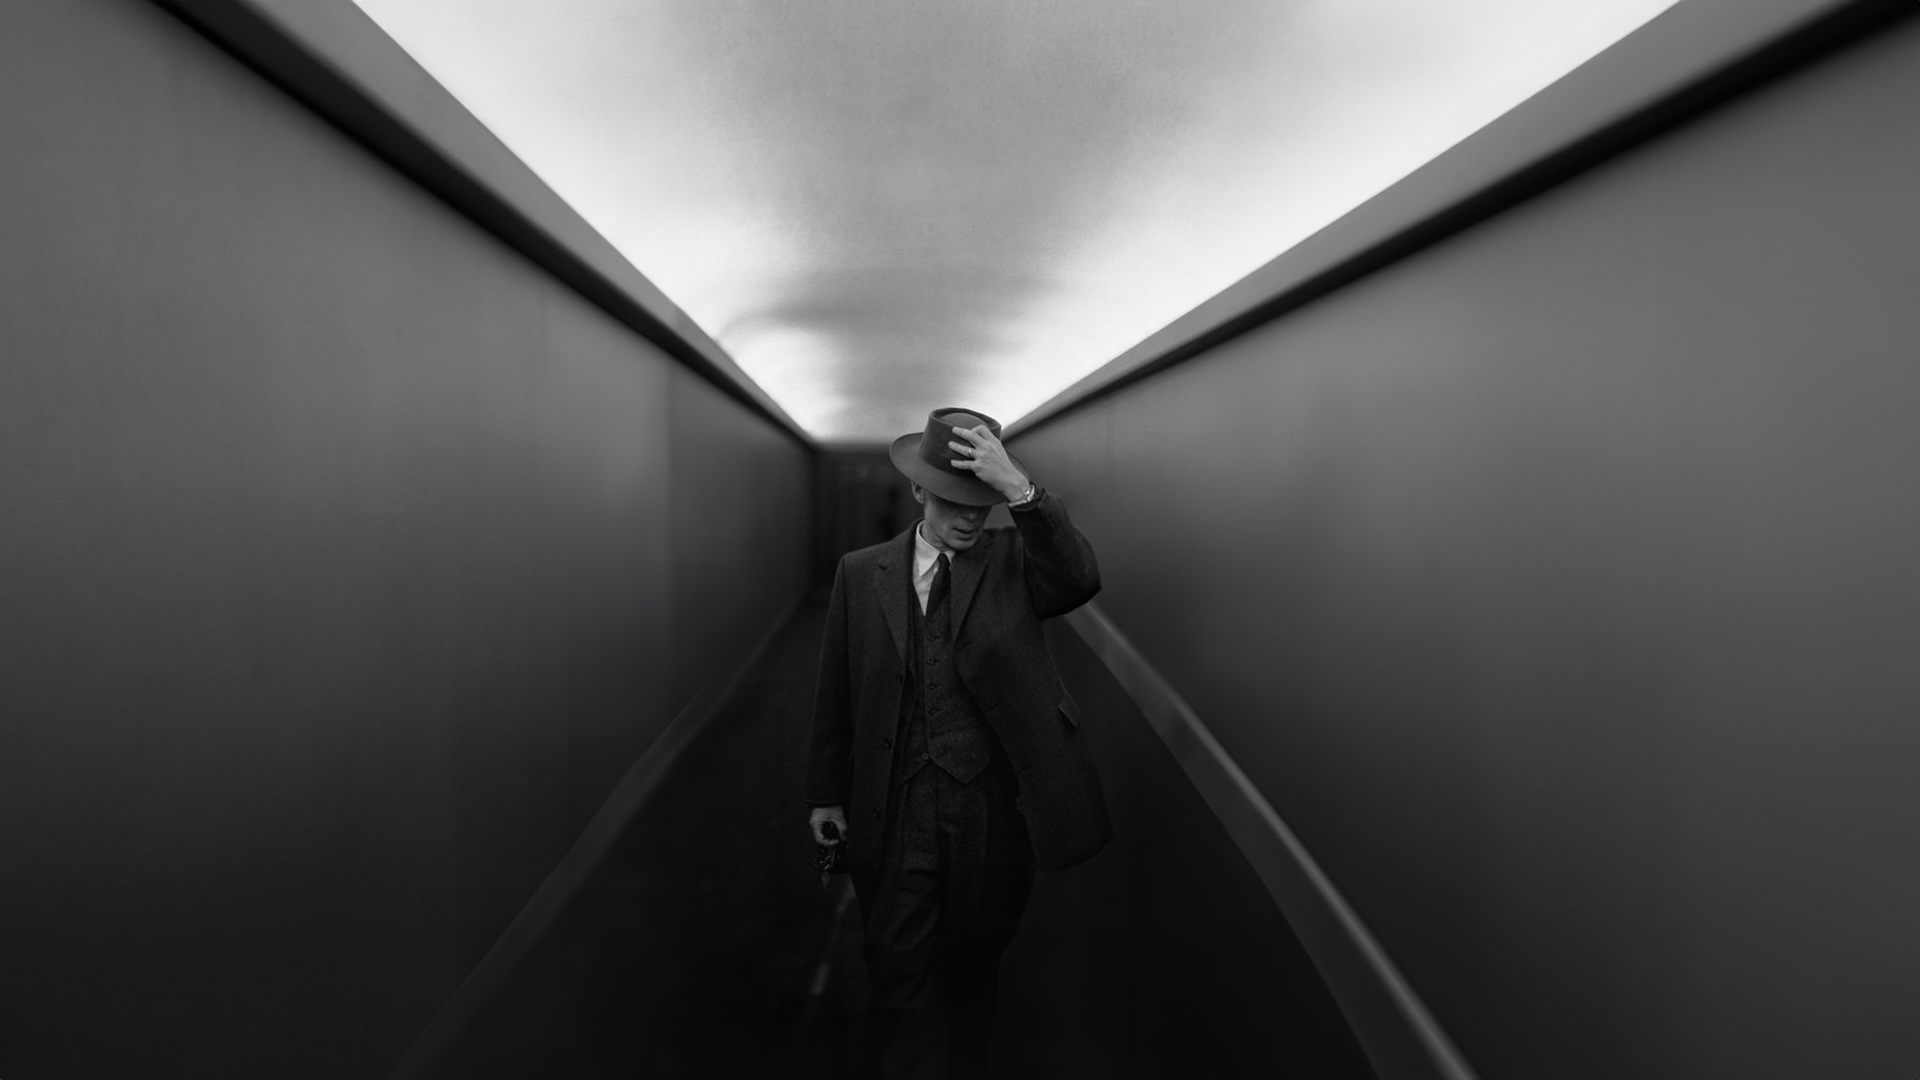 General 1920x1080 J. Robert Oppenheimer Oppenheimer (2023) hat monochrome men suit and tie standing film stills Cillian Murphy hallway